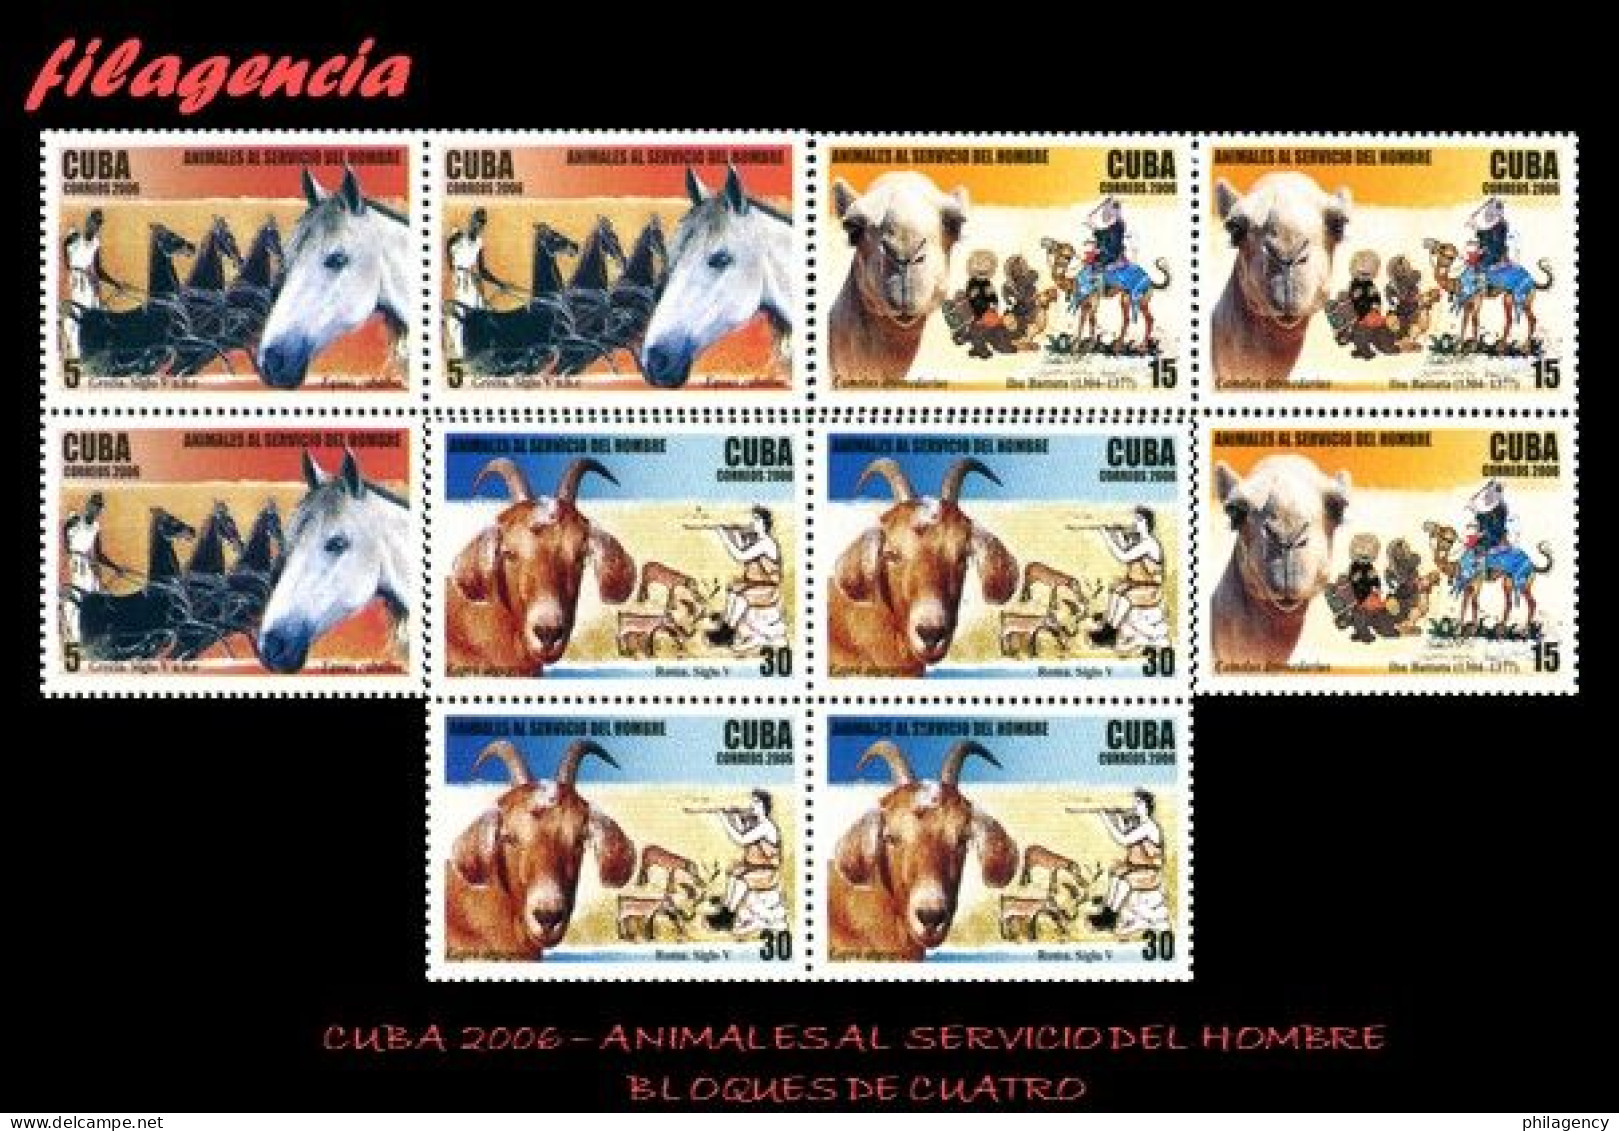 CUBA. BLOQUES DE CUATRO. 2006-24 ANIMALES AL SERVICIO DEL HOMBRE - Nuevos